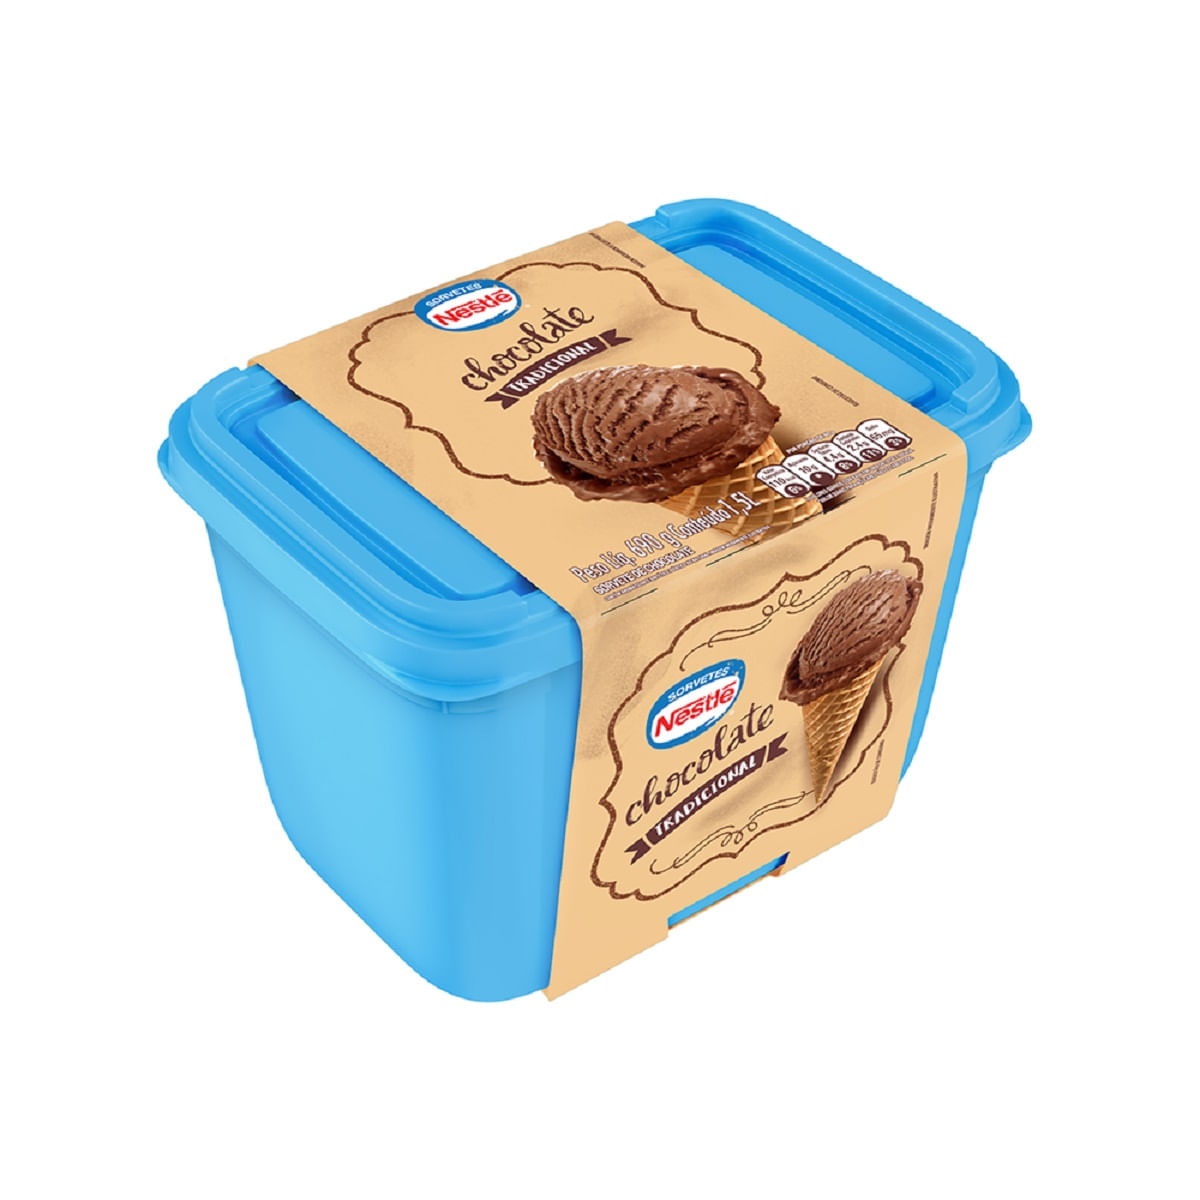 sorvete-chocolate-tradicional-nestle-pote-1,5-l-1.jpg